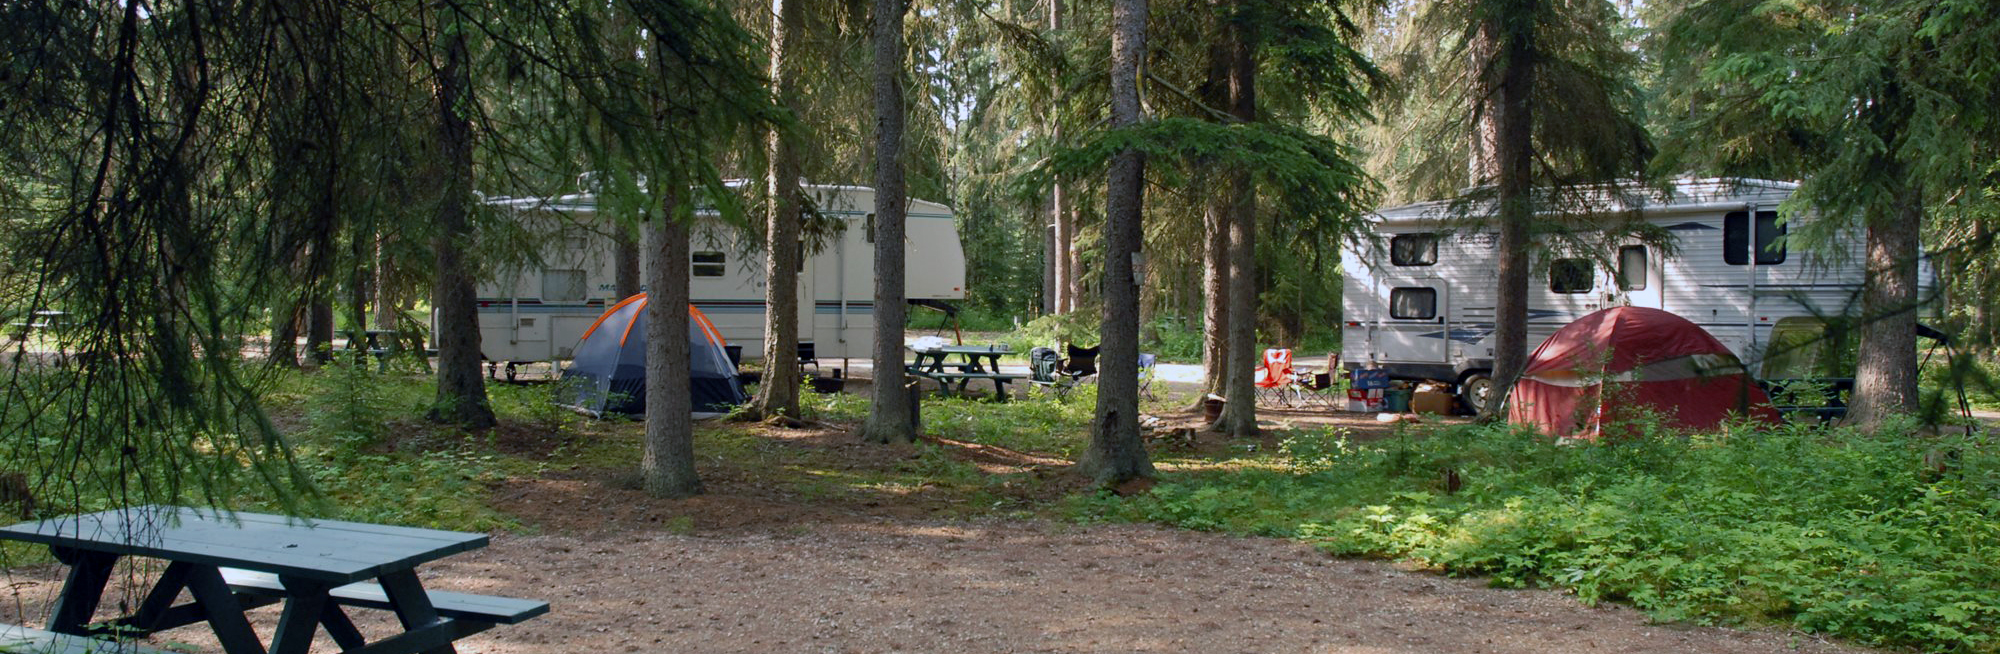 campground in valemount